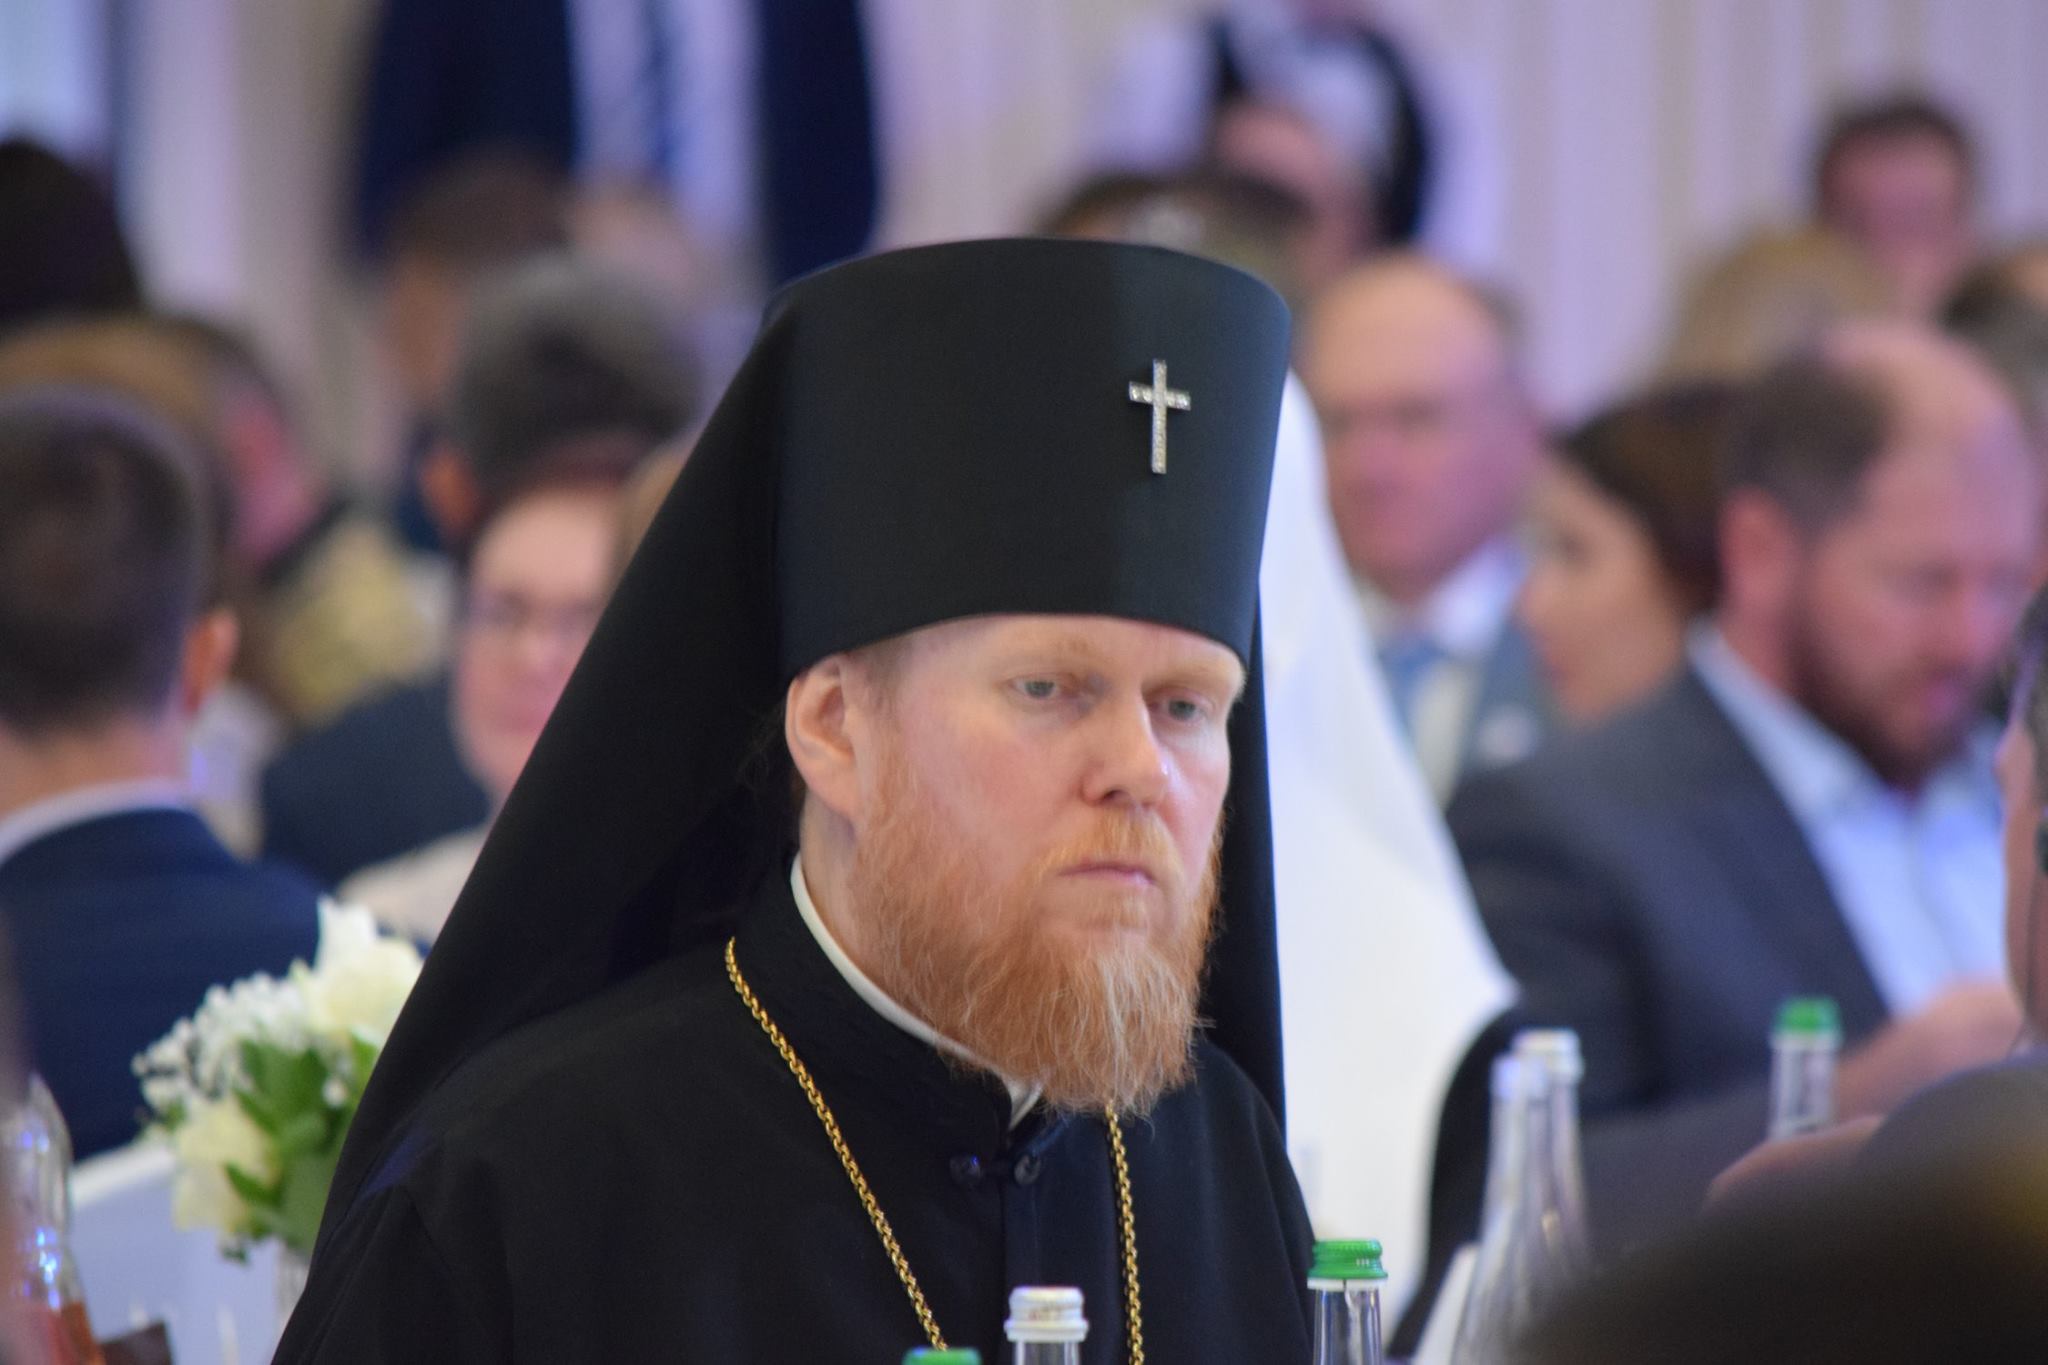 Москва применила излюбленный метод гибридной войны на украинской церкви: в УПЦ КП заявили об "атаке клонов"